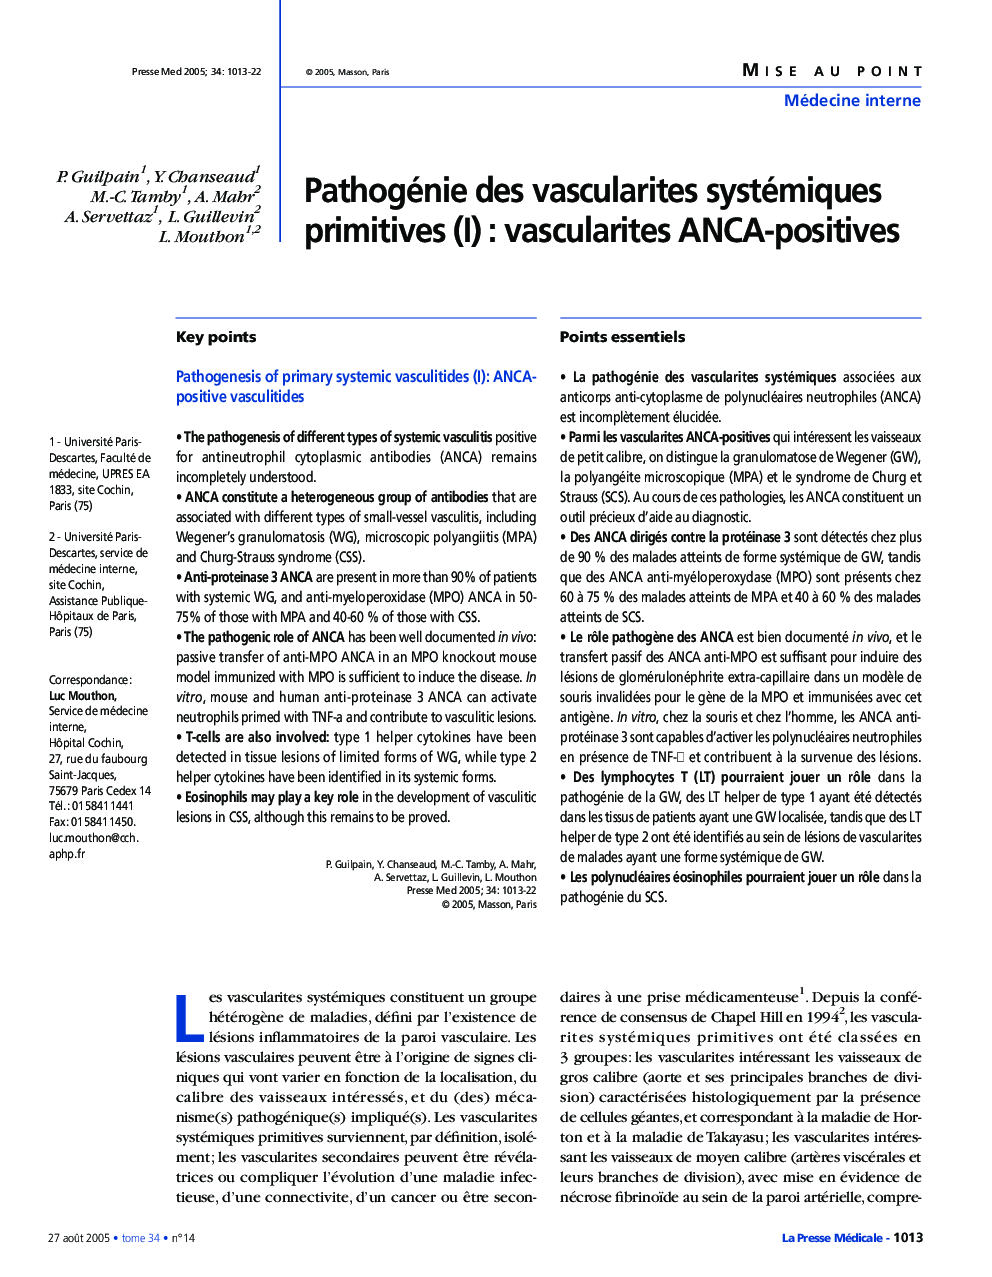 Pathogénie des vascularites systémiques primitives (I) : vascularites ANCA-positives